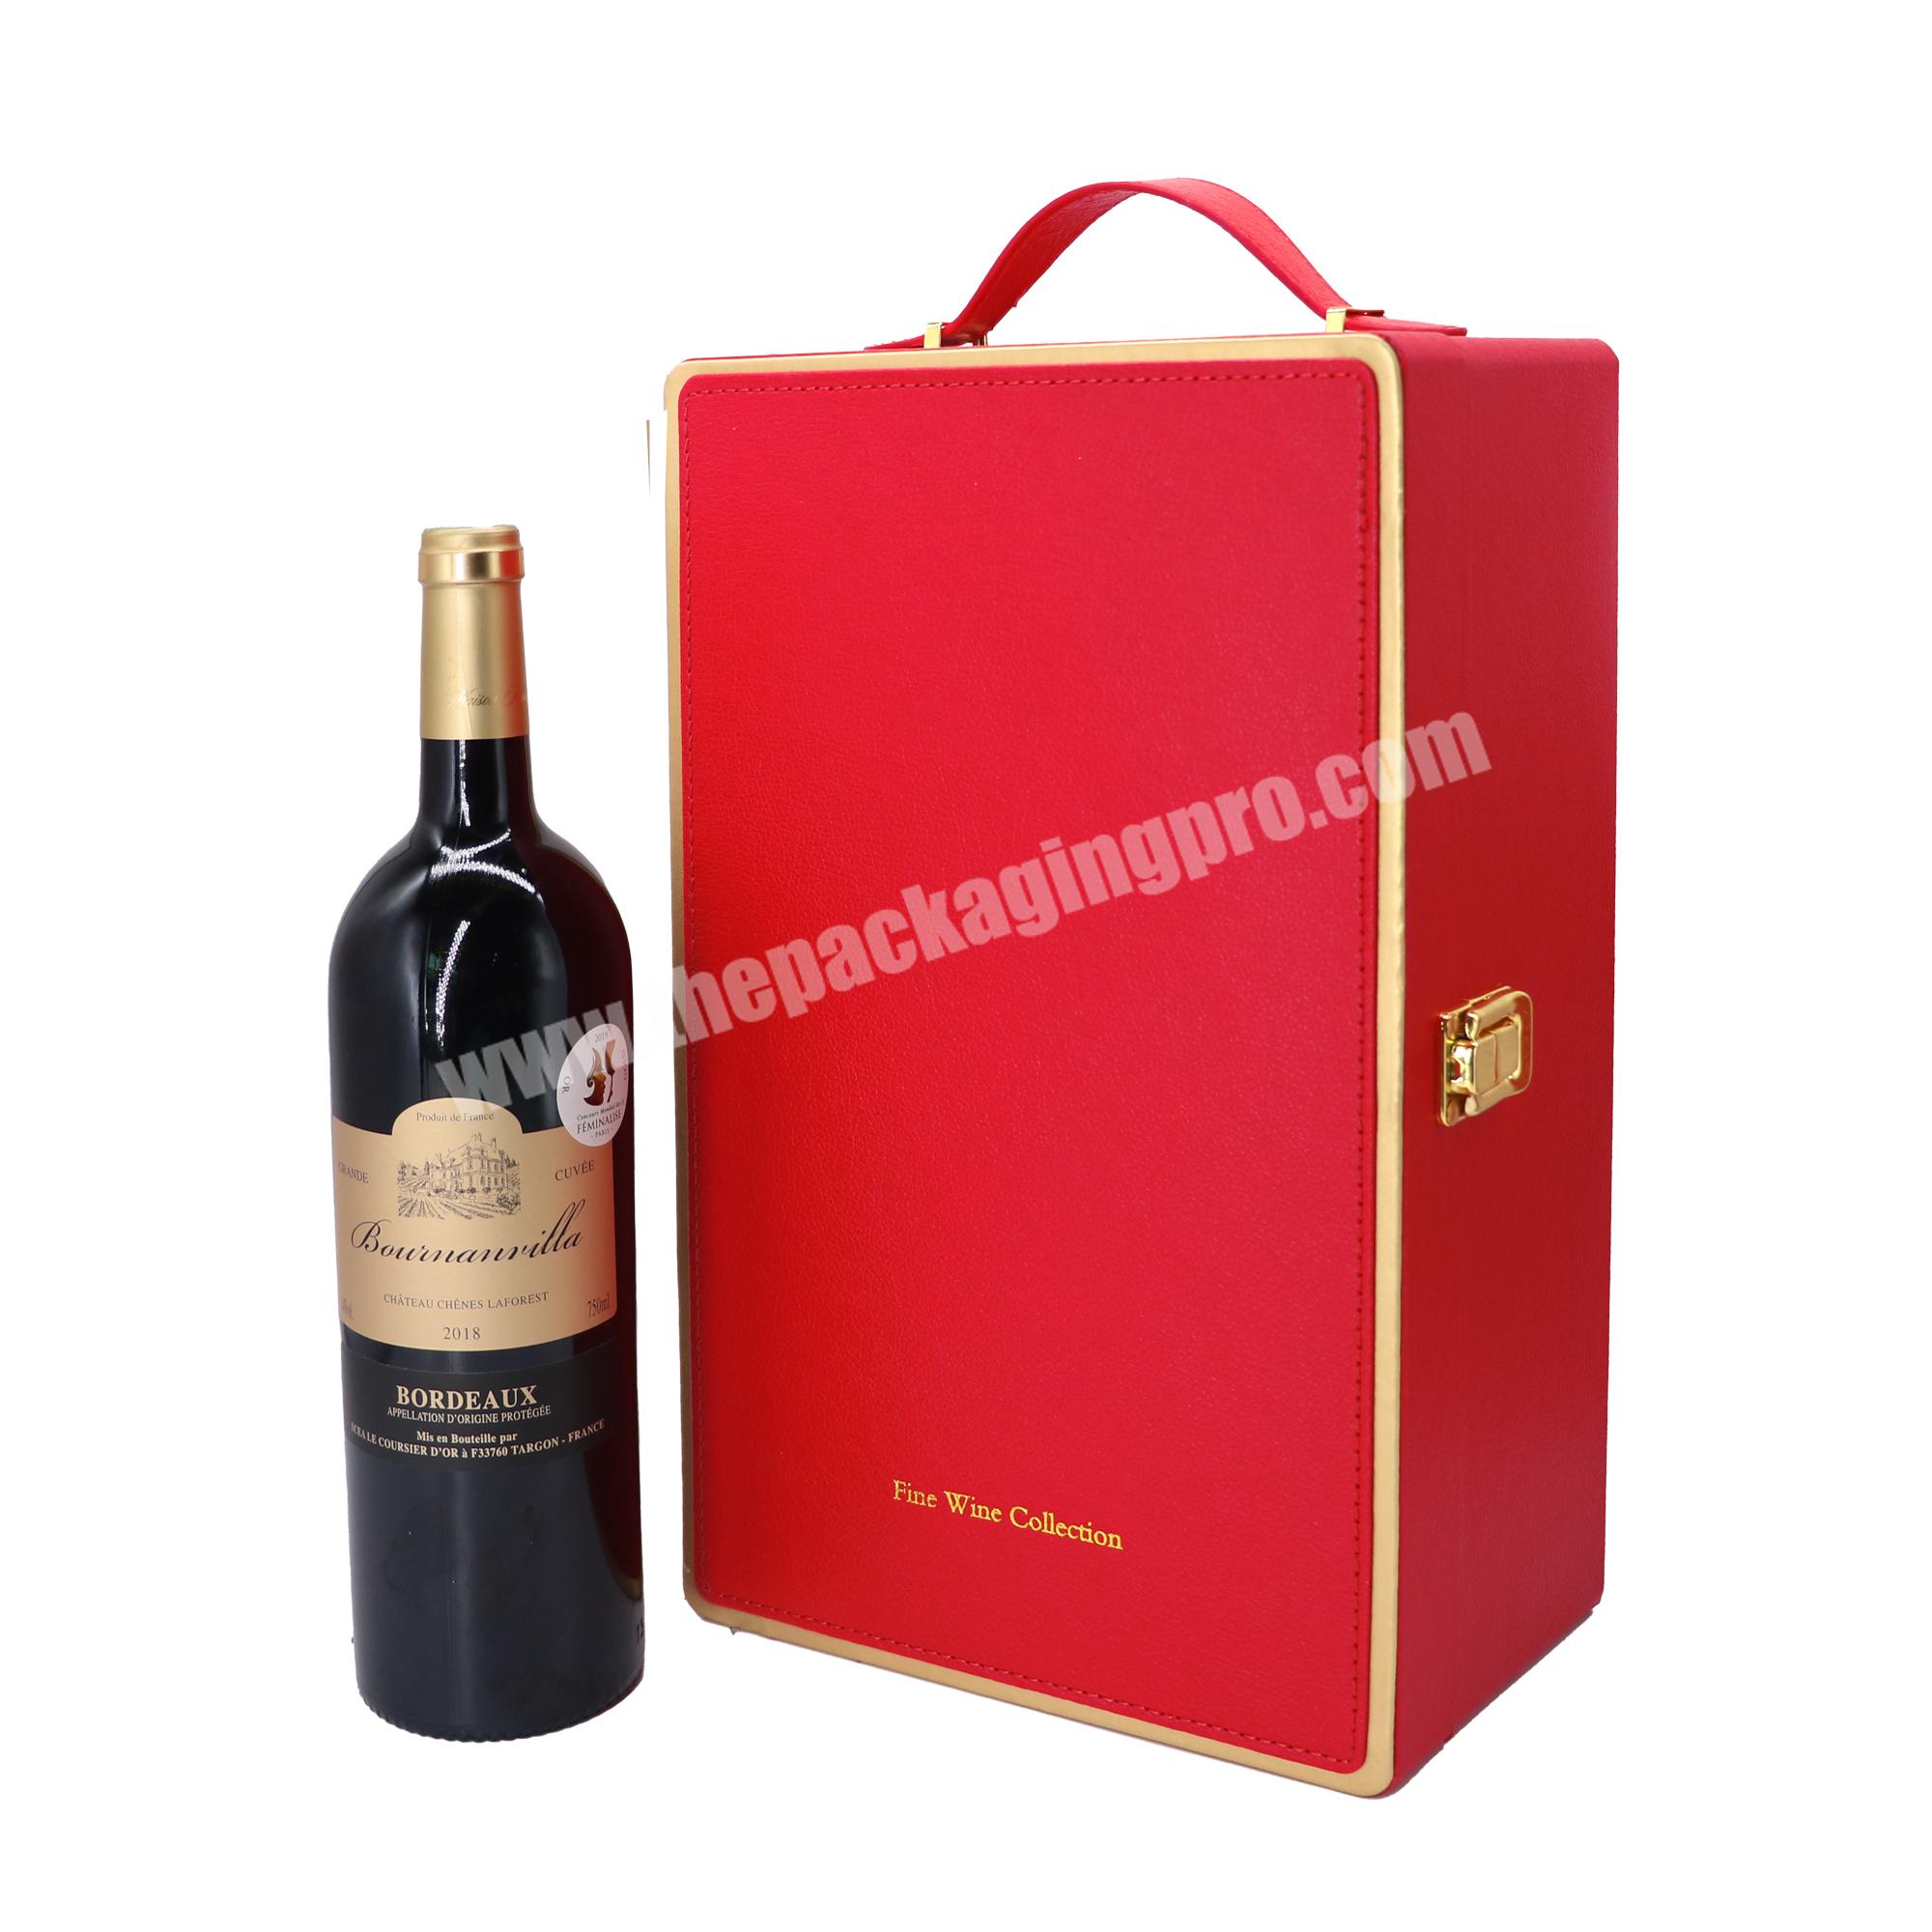 Custom box wine luxury 2 bottles of wine gift box set wine accessories gift box